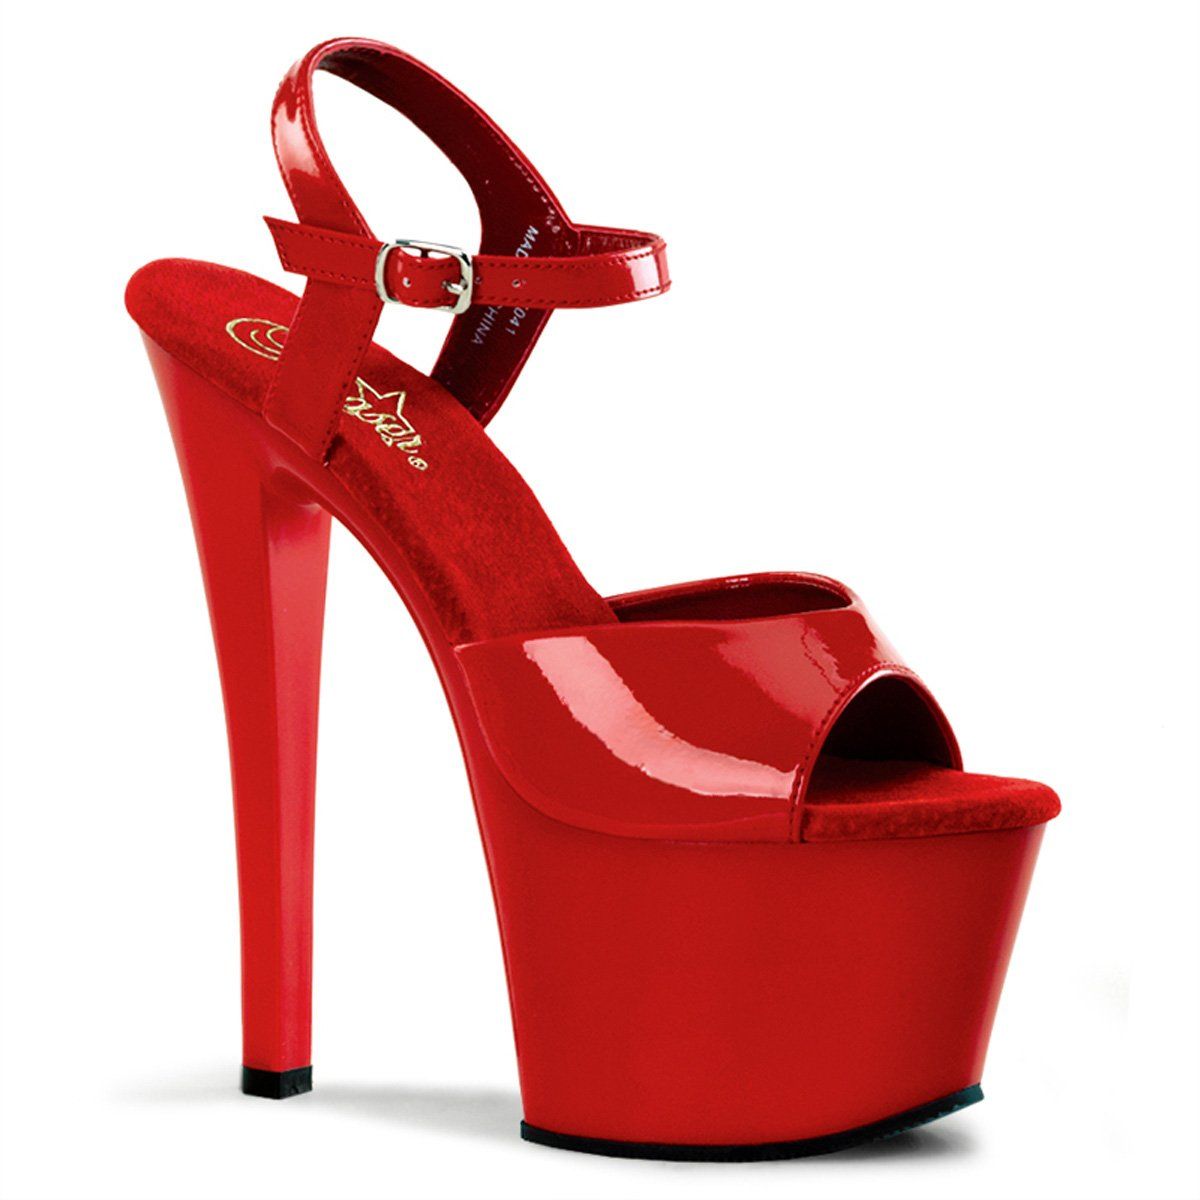 SKY-309 Red Patent Platform Sandal Pleaser